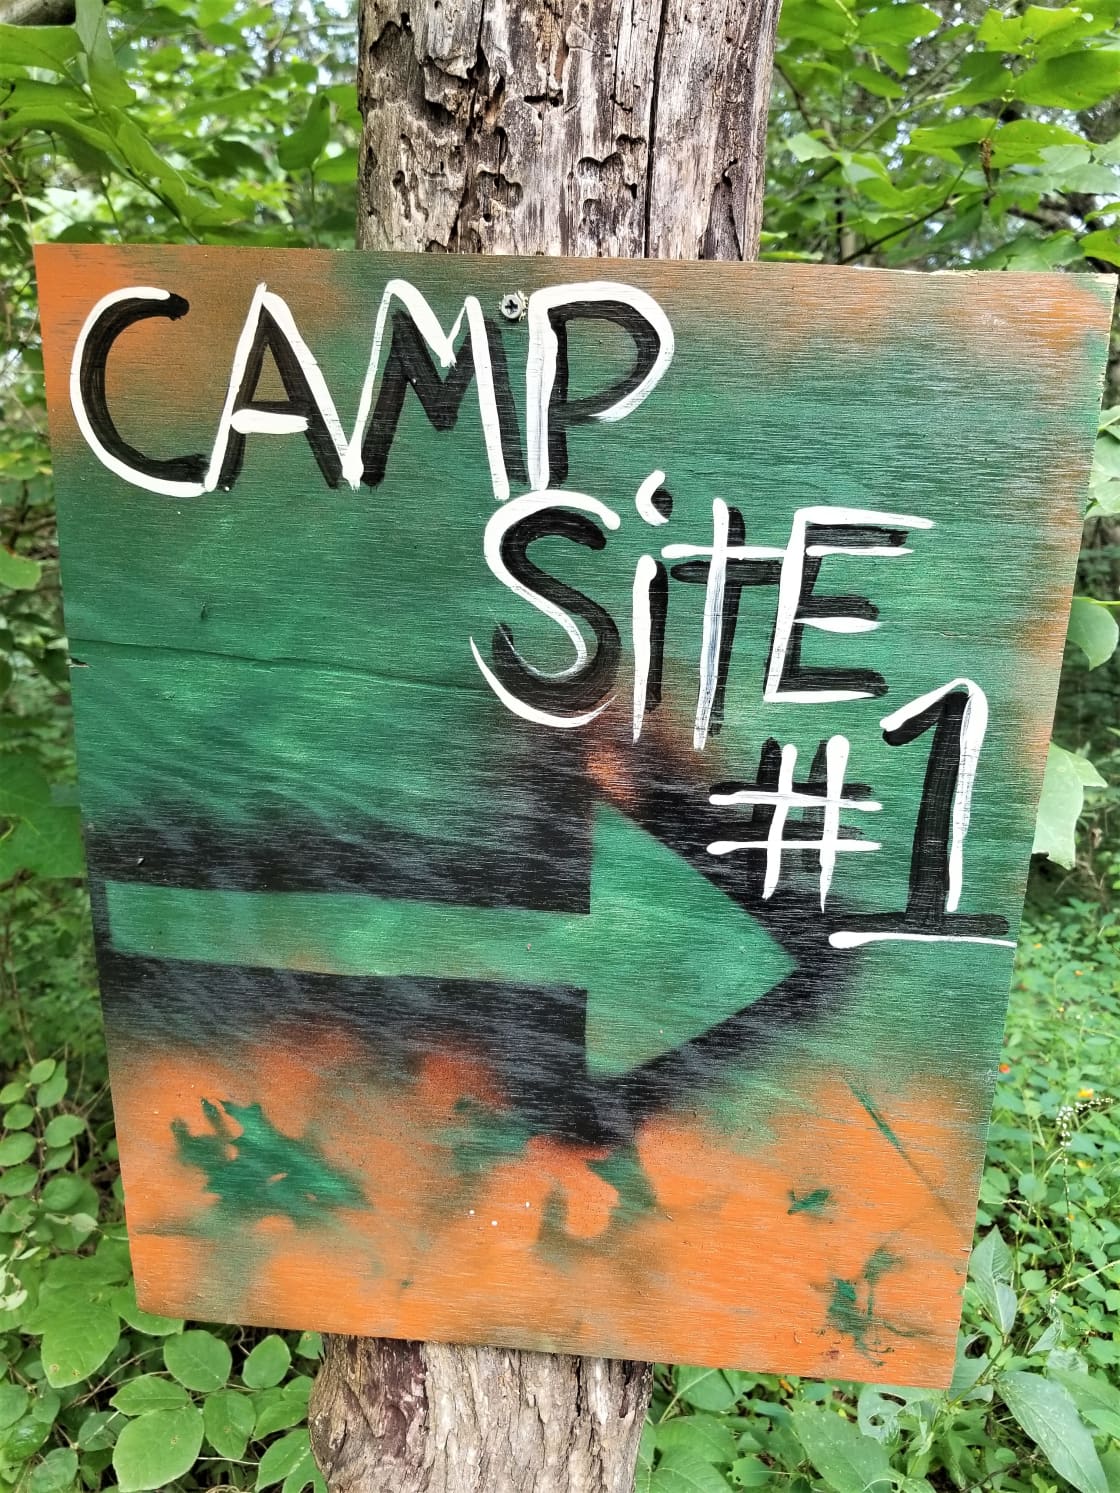 Campsite sign